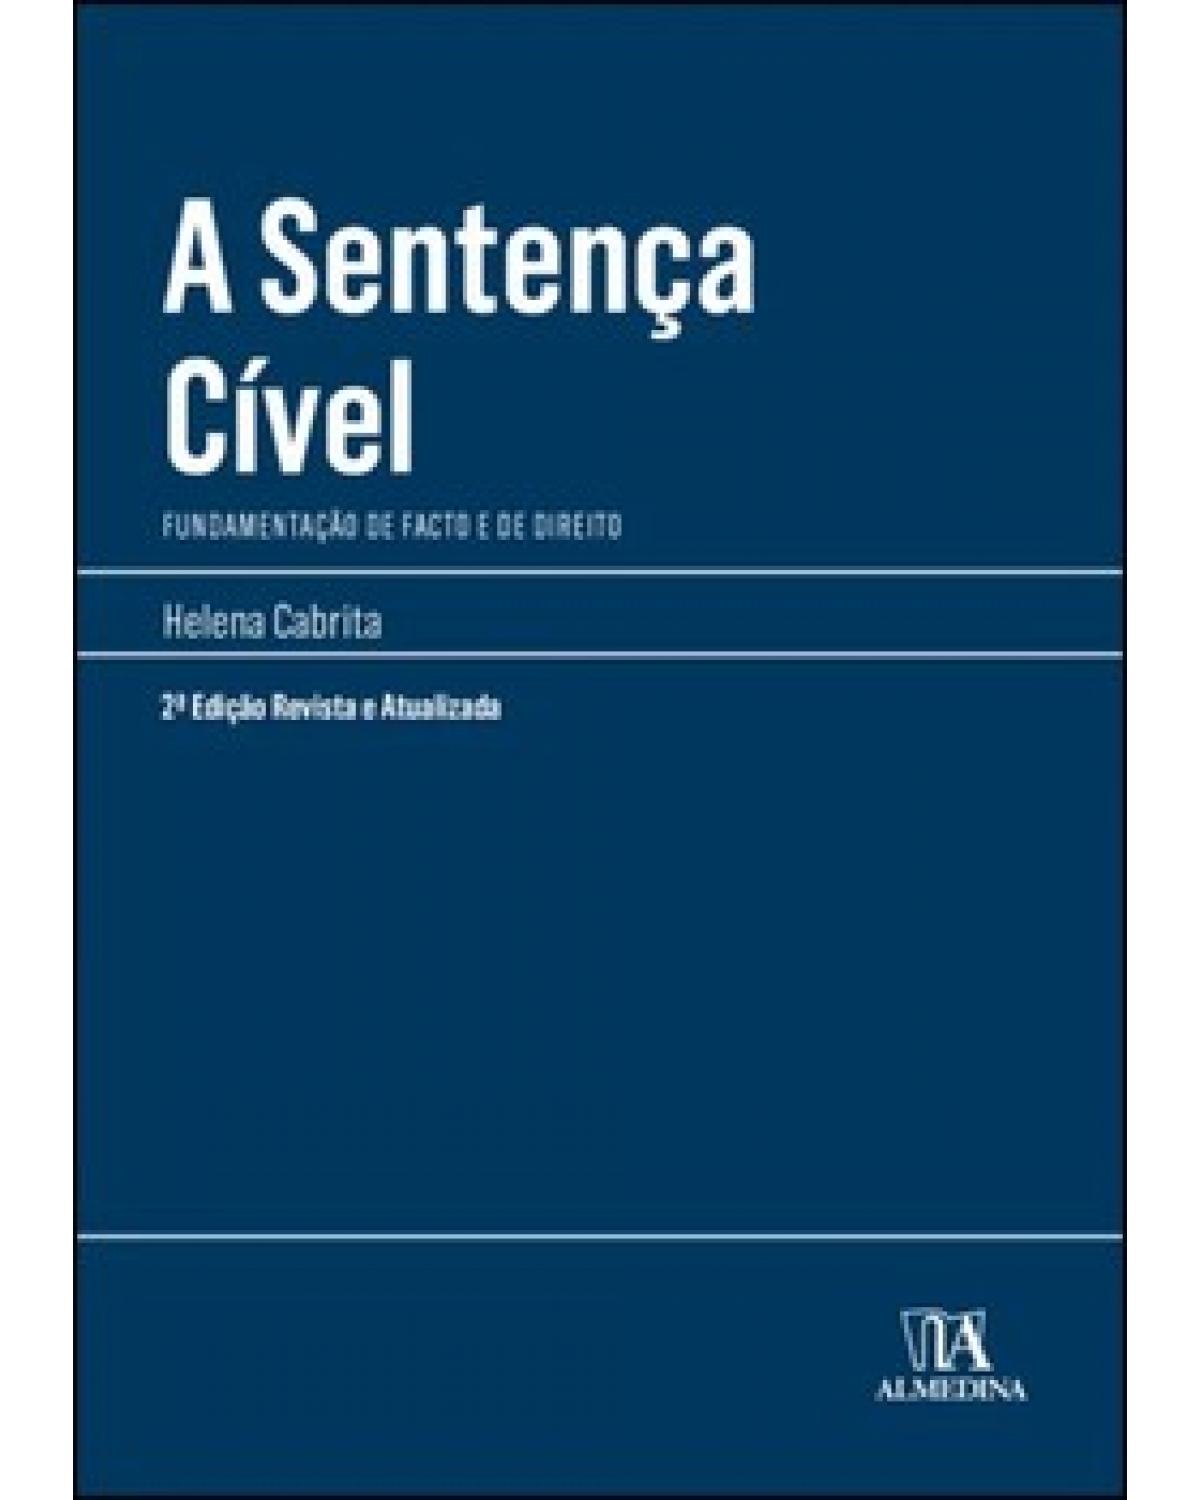 A sentença cível: fundamentação de facto e de direito - 1ª Edição | 2022